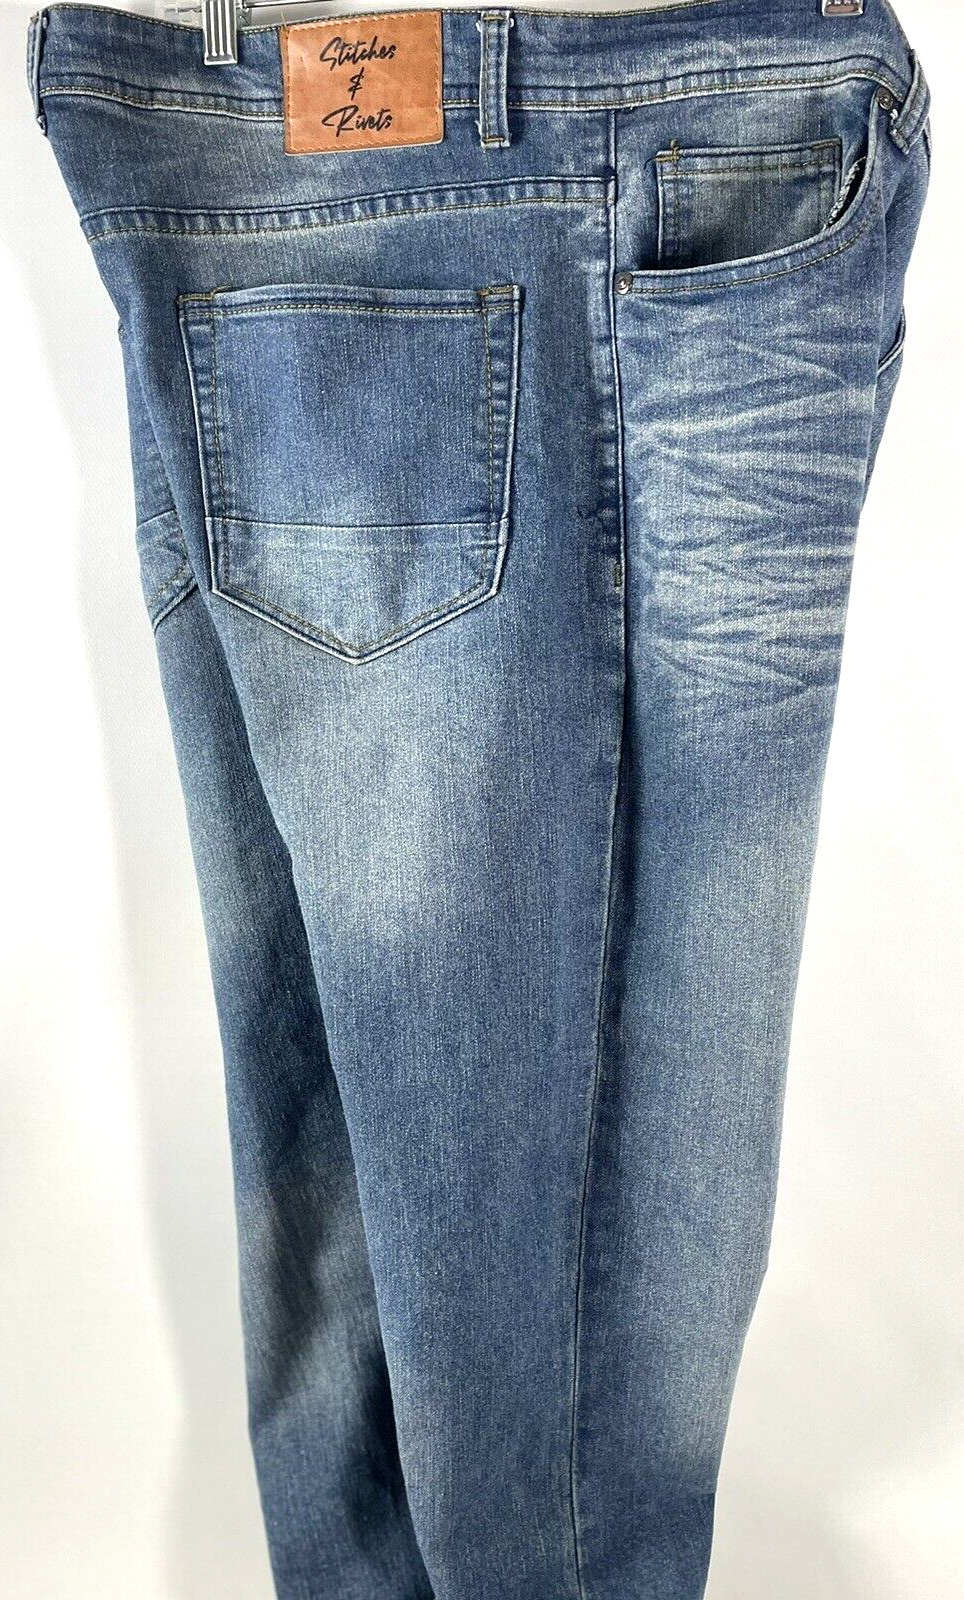 Stitches & Rivets Men's Jeans Stretch Blue Denim Pants 38x32 Cowboy Rancher  Farm